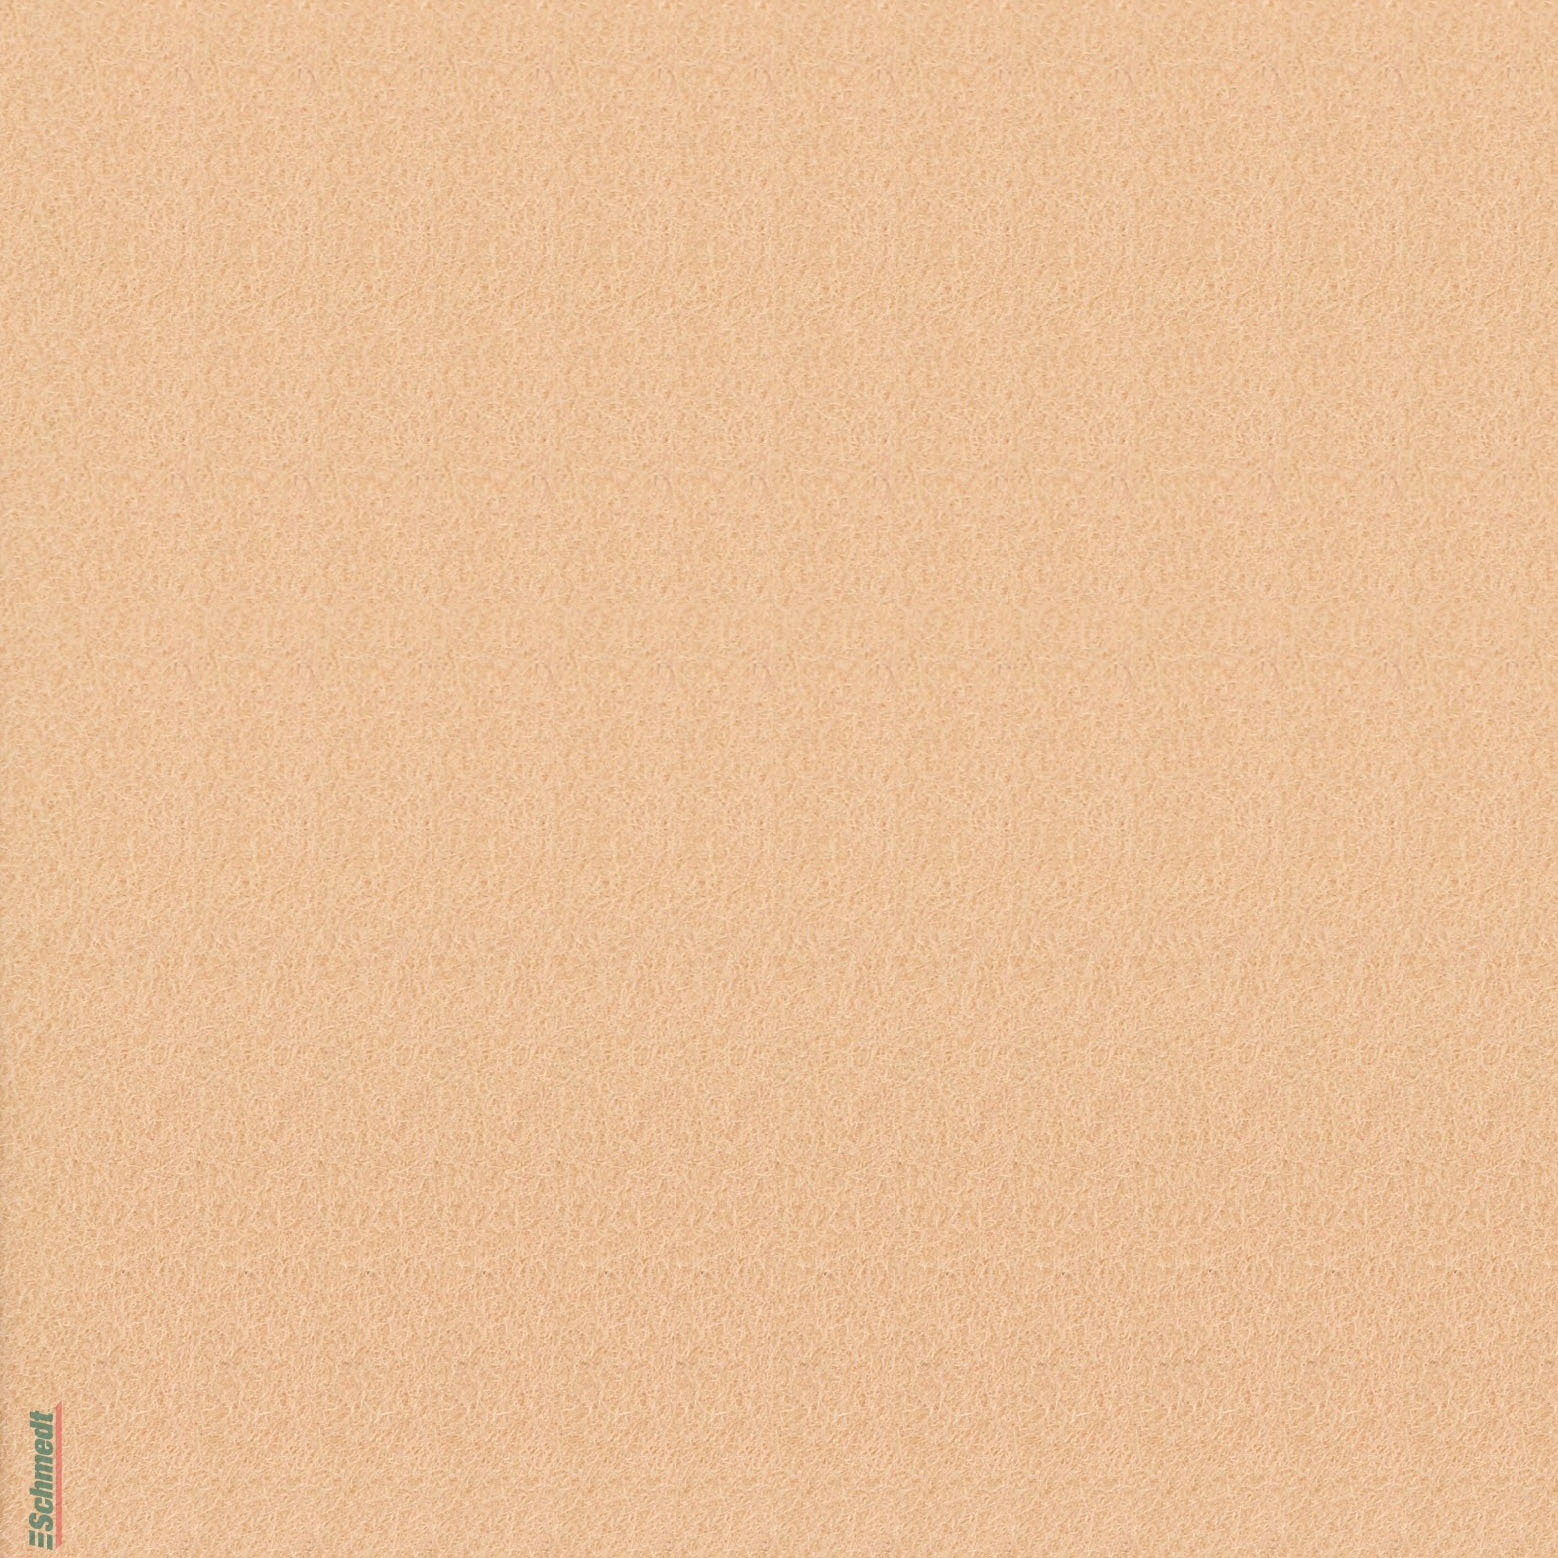 Velours-Papier - Farbe 718 - hellbraun - zum Beziehen von Büchern, Schachteln, als Innenfutter für Kästen und Schuber, zum Gestalten von Ein...